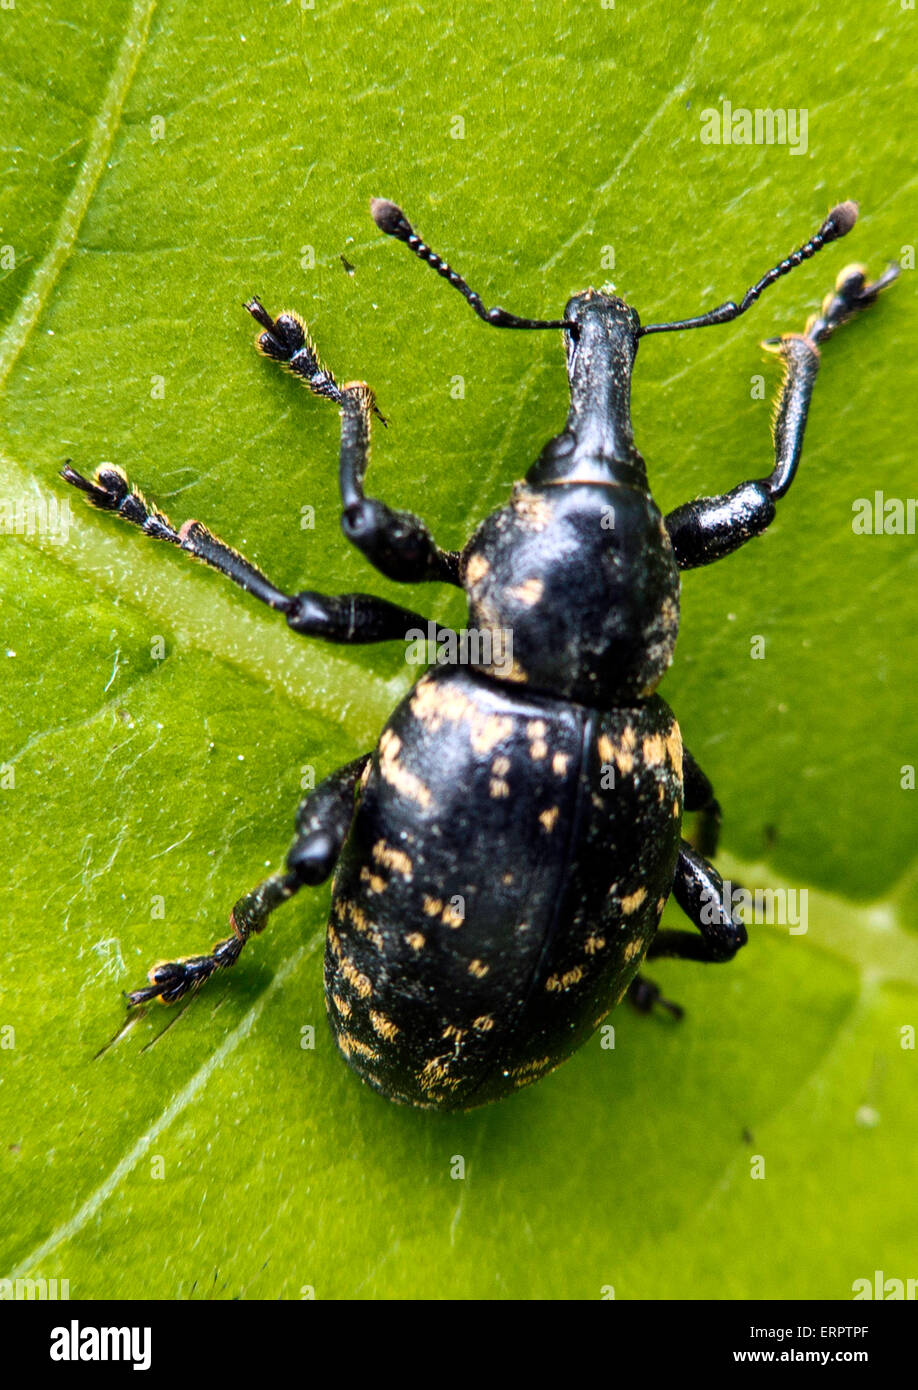 beetle, Stock Photo